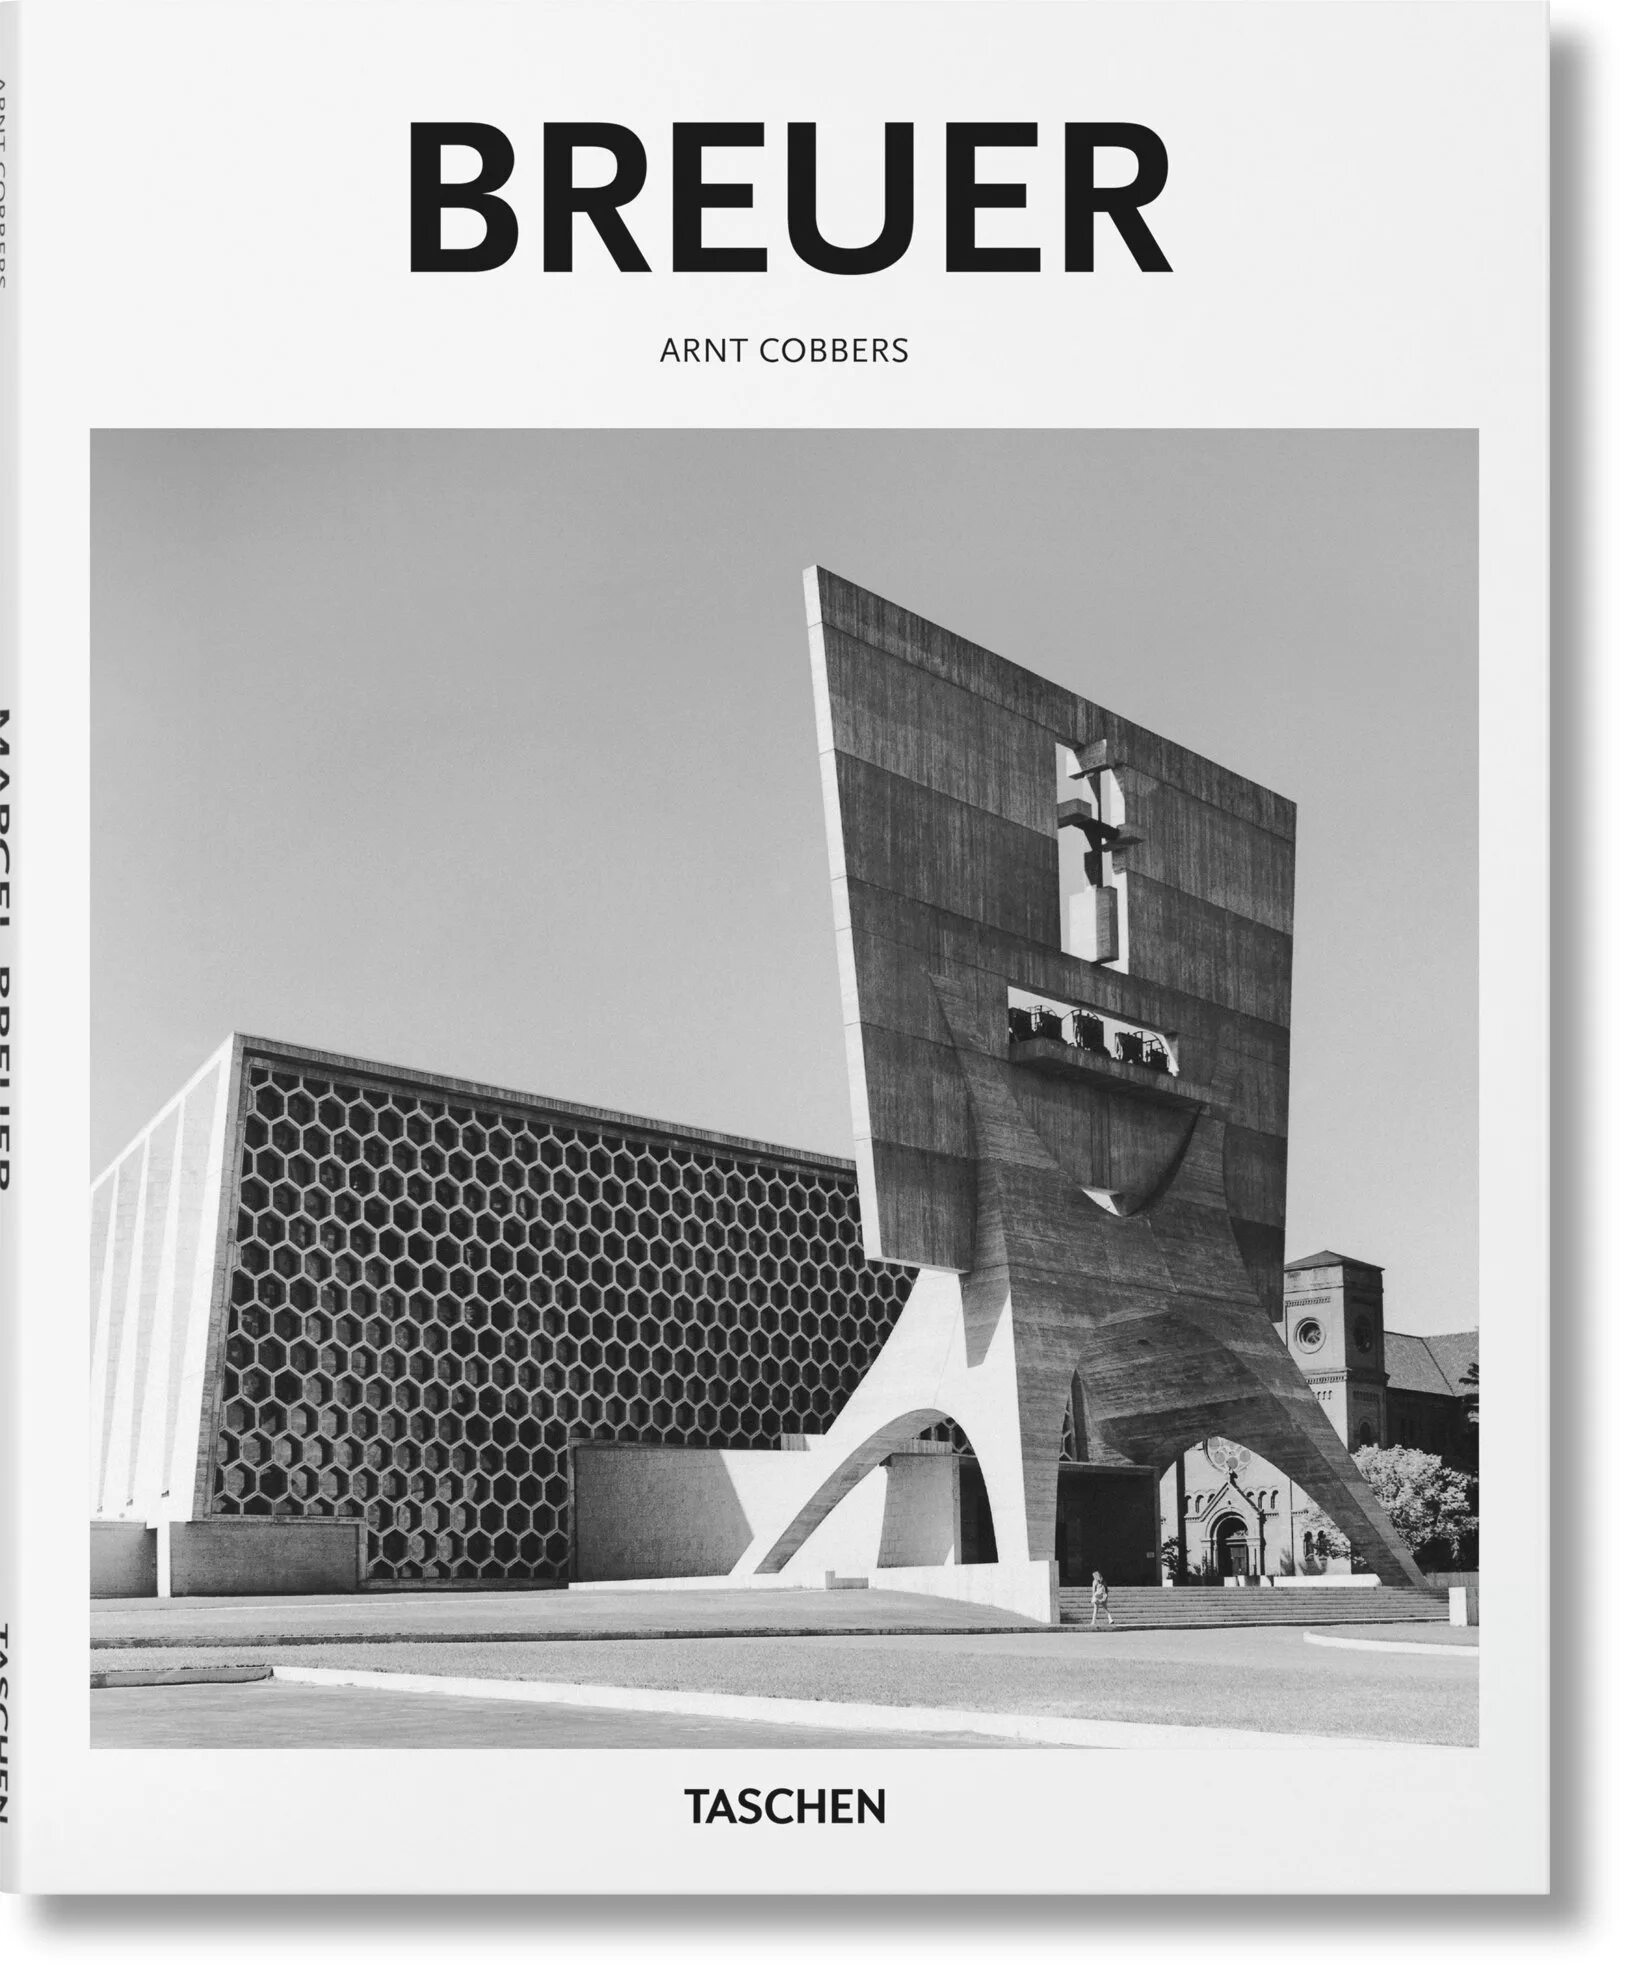 Magazine called. Bauhaus книга Taschen. Cobbers arnt "Breuer". Портьер Баухауз. Basic Architecture Taschen купить.